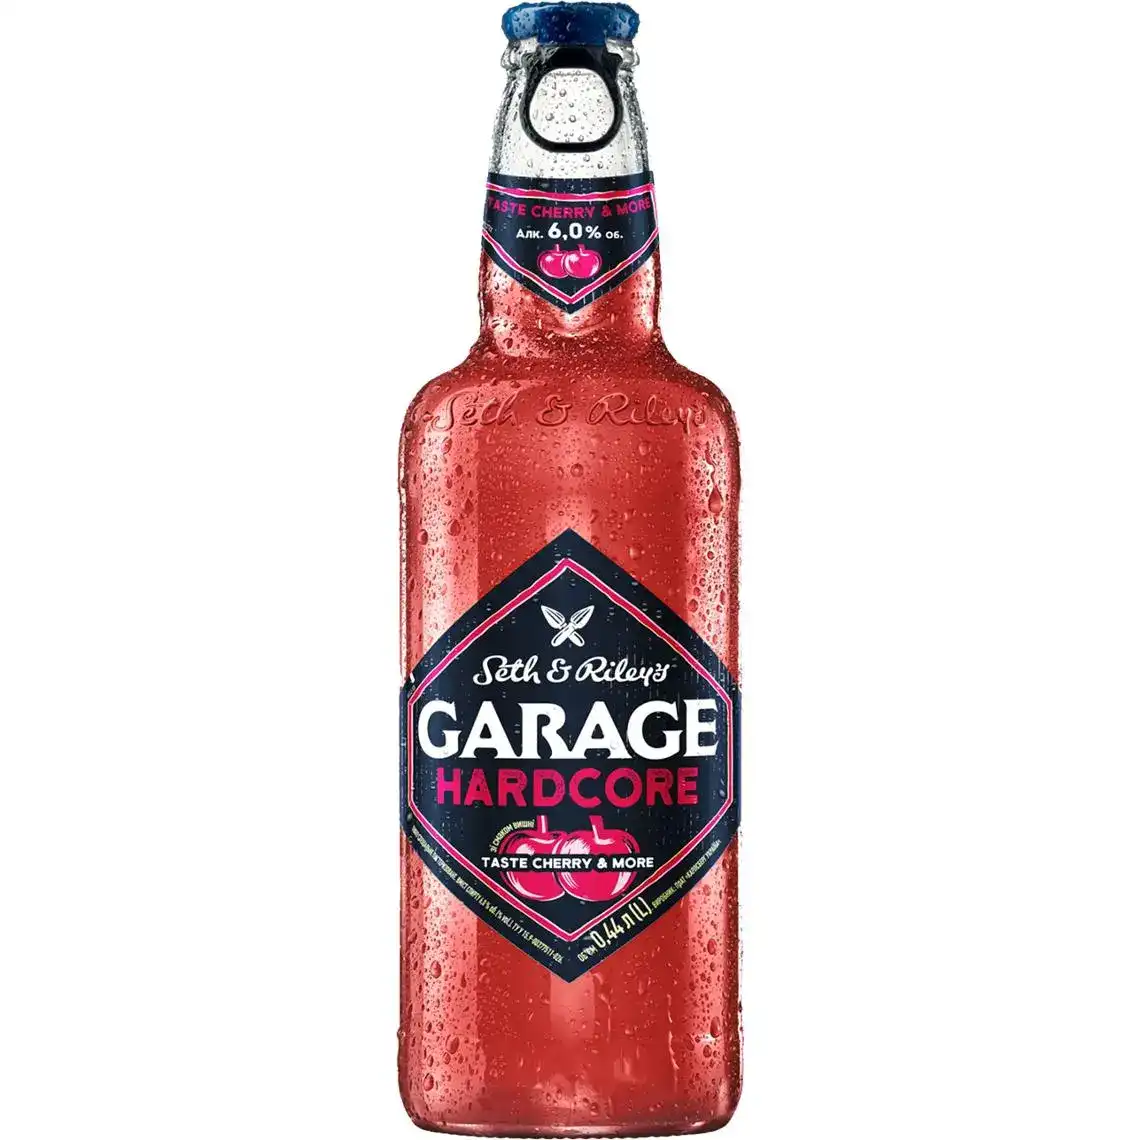 Пиво Garage Seth & Riley`s Hardcore taste Cherry & More 6% 0.44 л